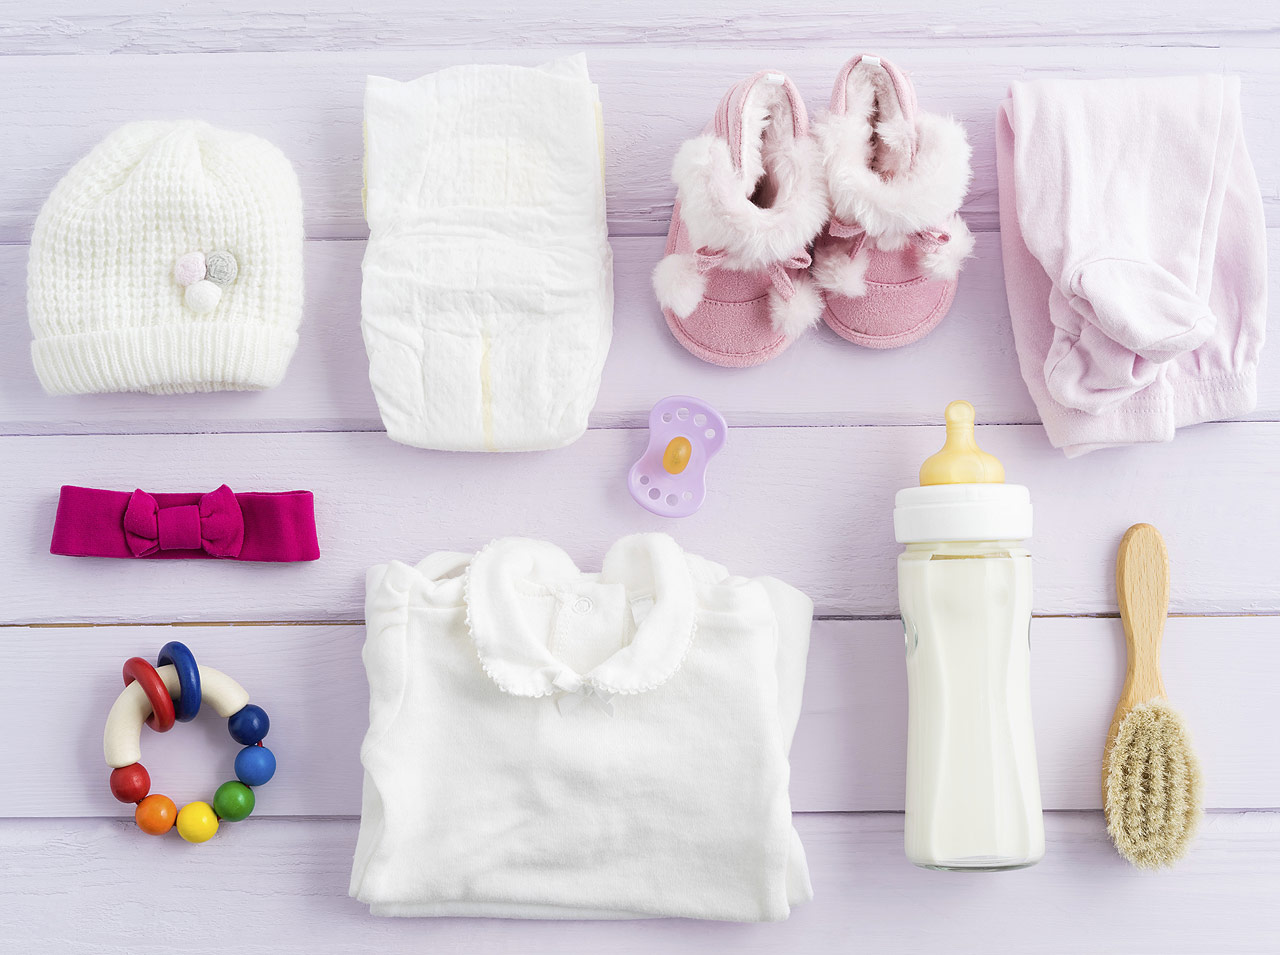 Choisir vetement bébé : choix taille et tissu vetement pour enfant